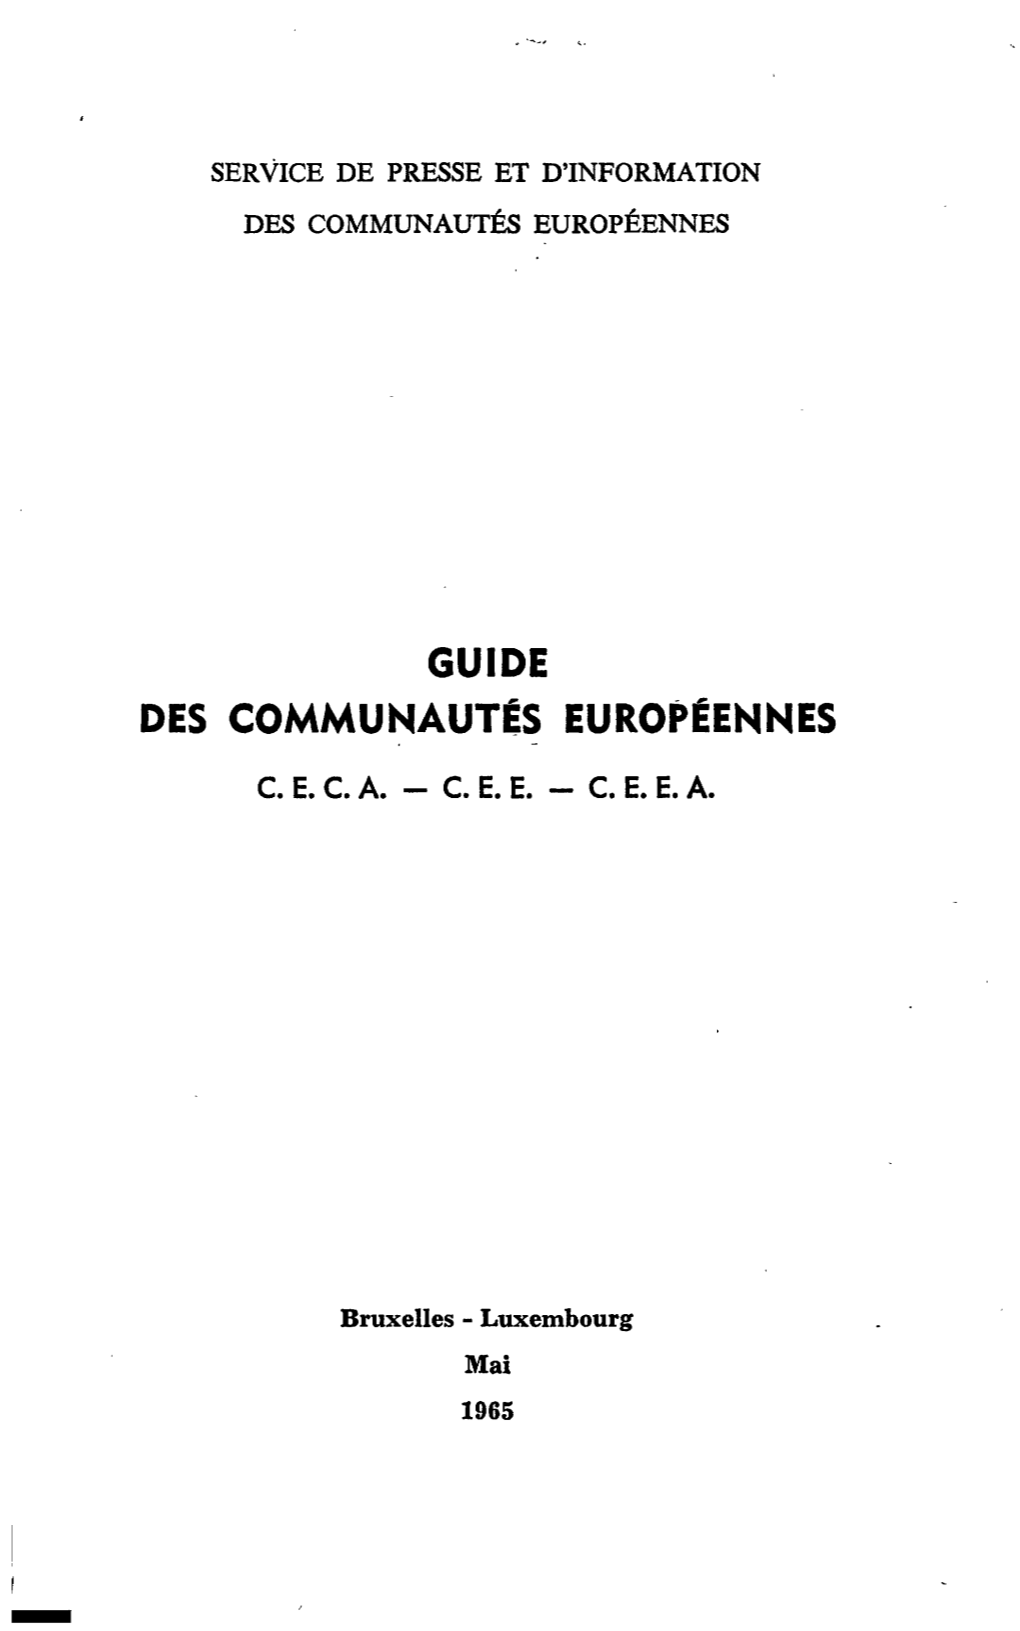 Guide Des Communautés Européennes